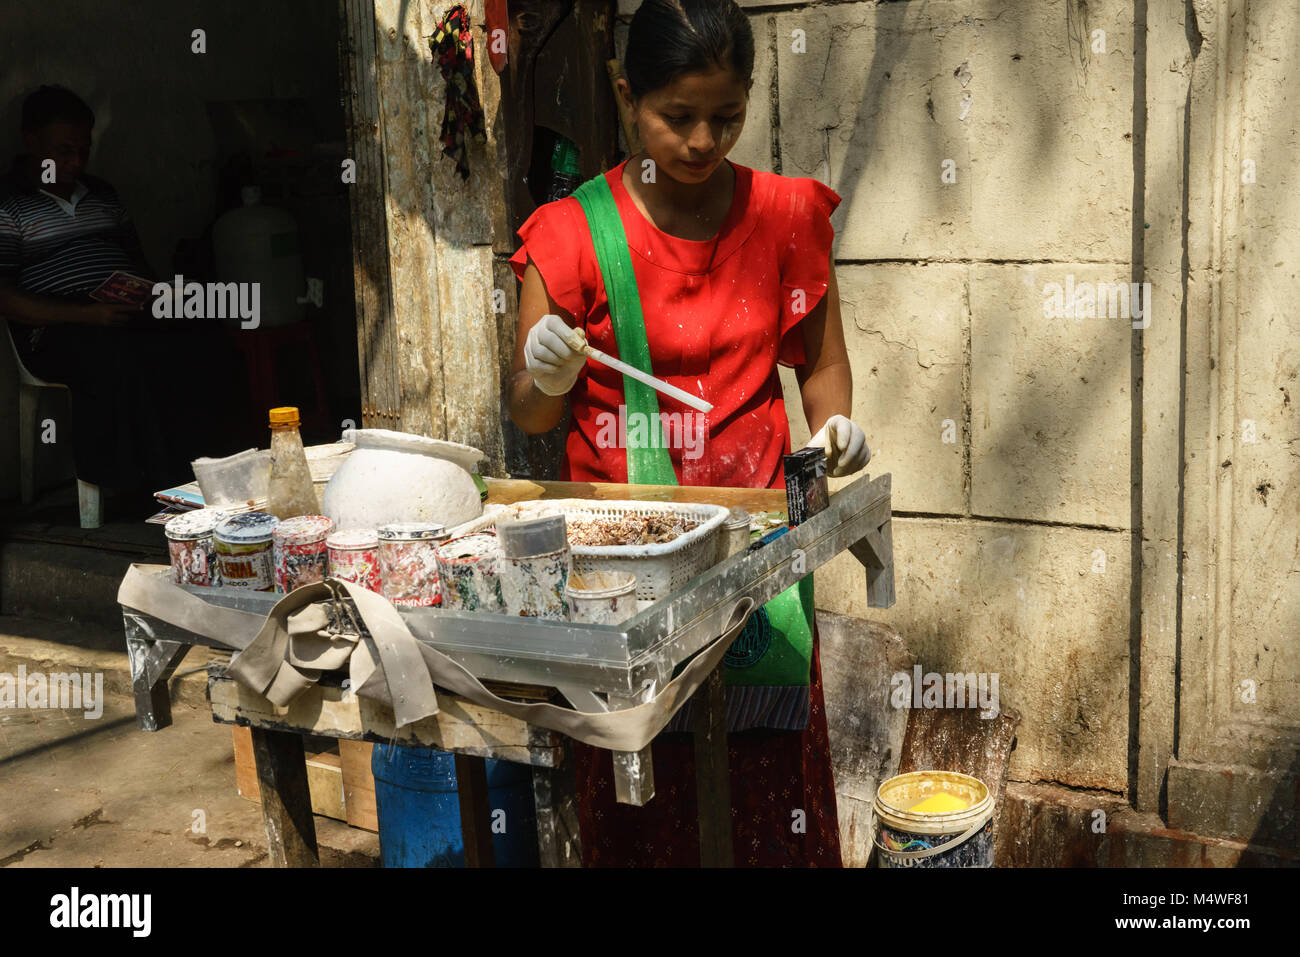 Stand de bétel dans le centre-ville de Yangon, Myanmar, le vendeur l'application de la chaux à bétel quid Banque D'Images